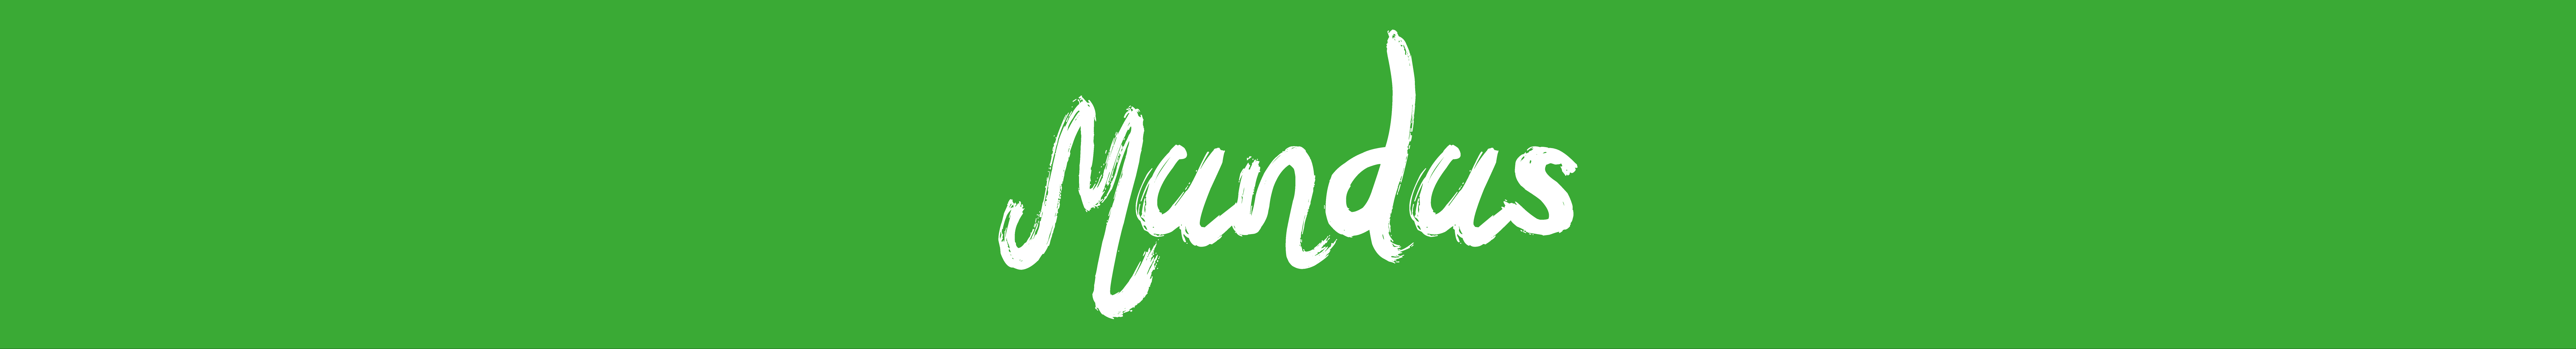 Mundus banner